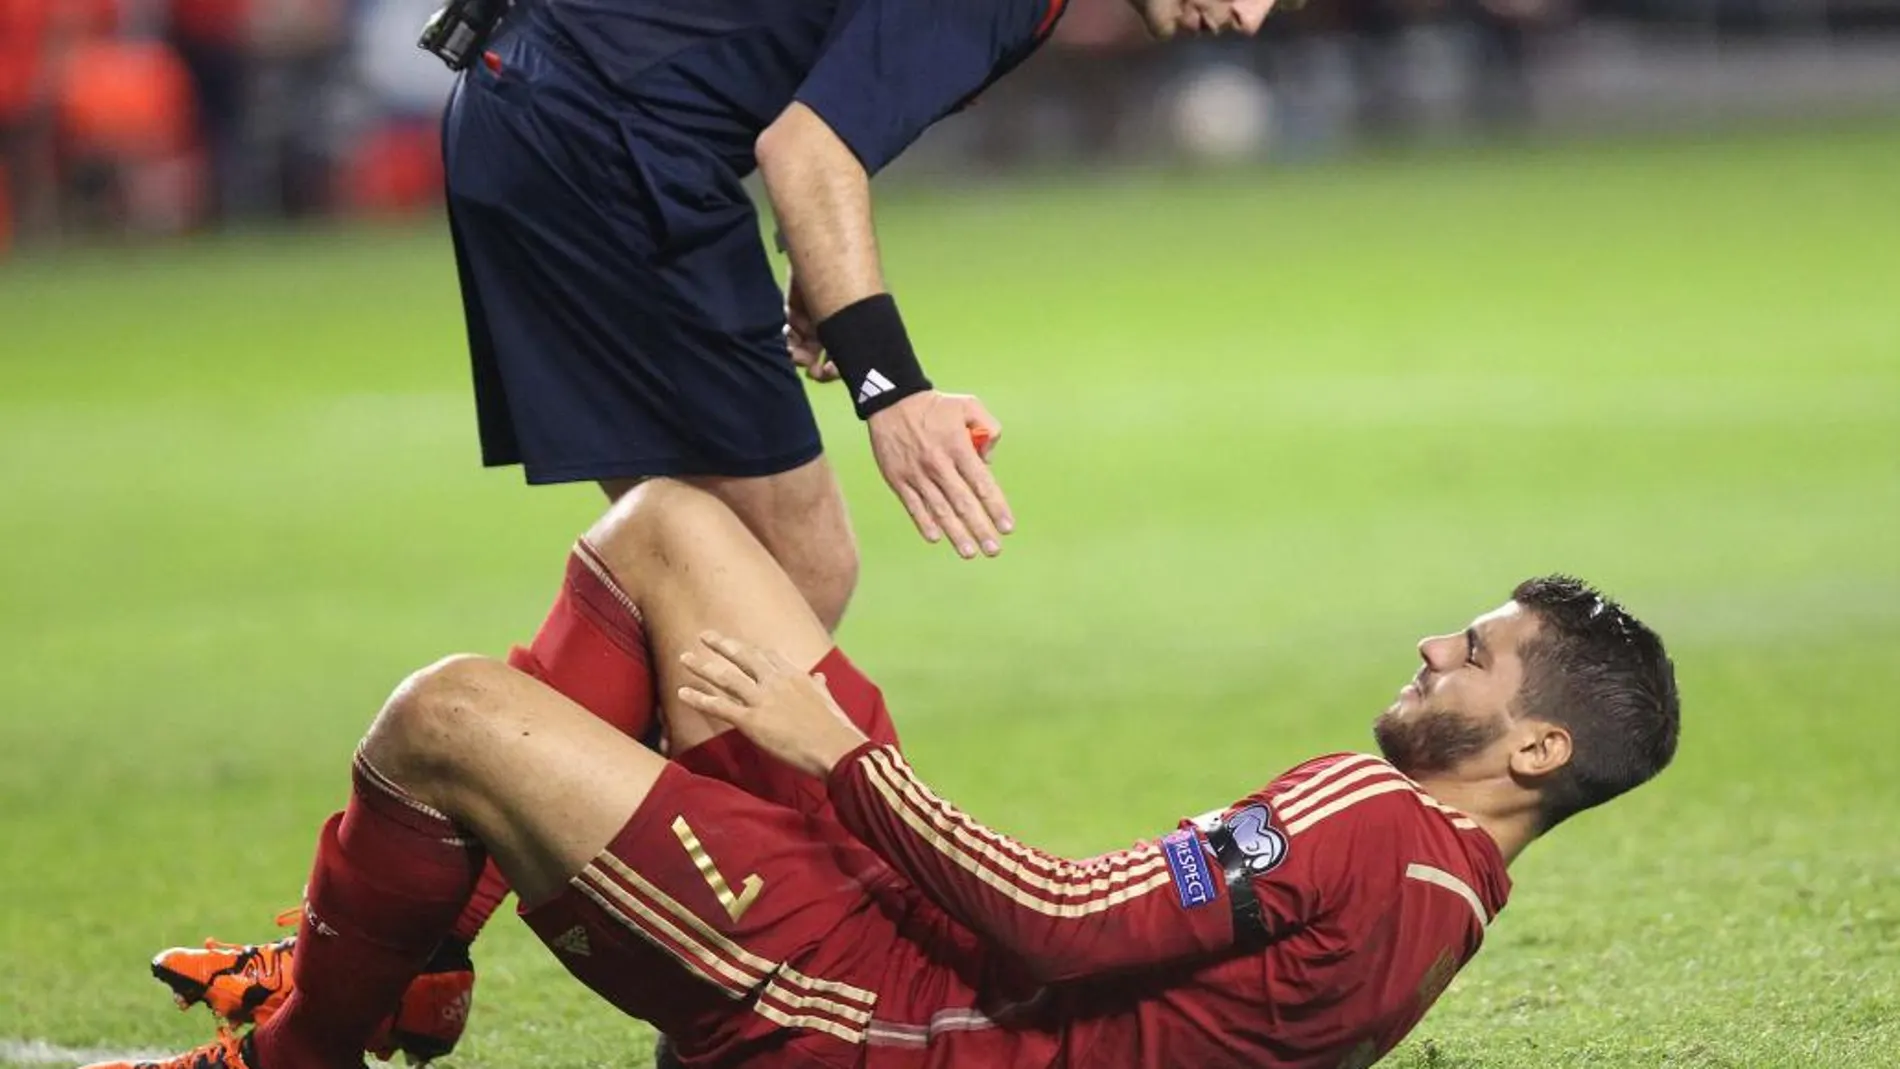 El delantero de la selección española Álvaro Morata cae lesionado junto al árbitro, durante el partido